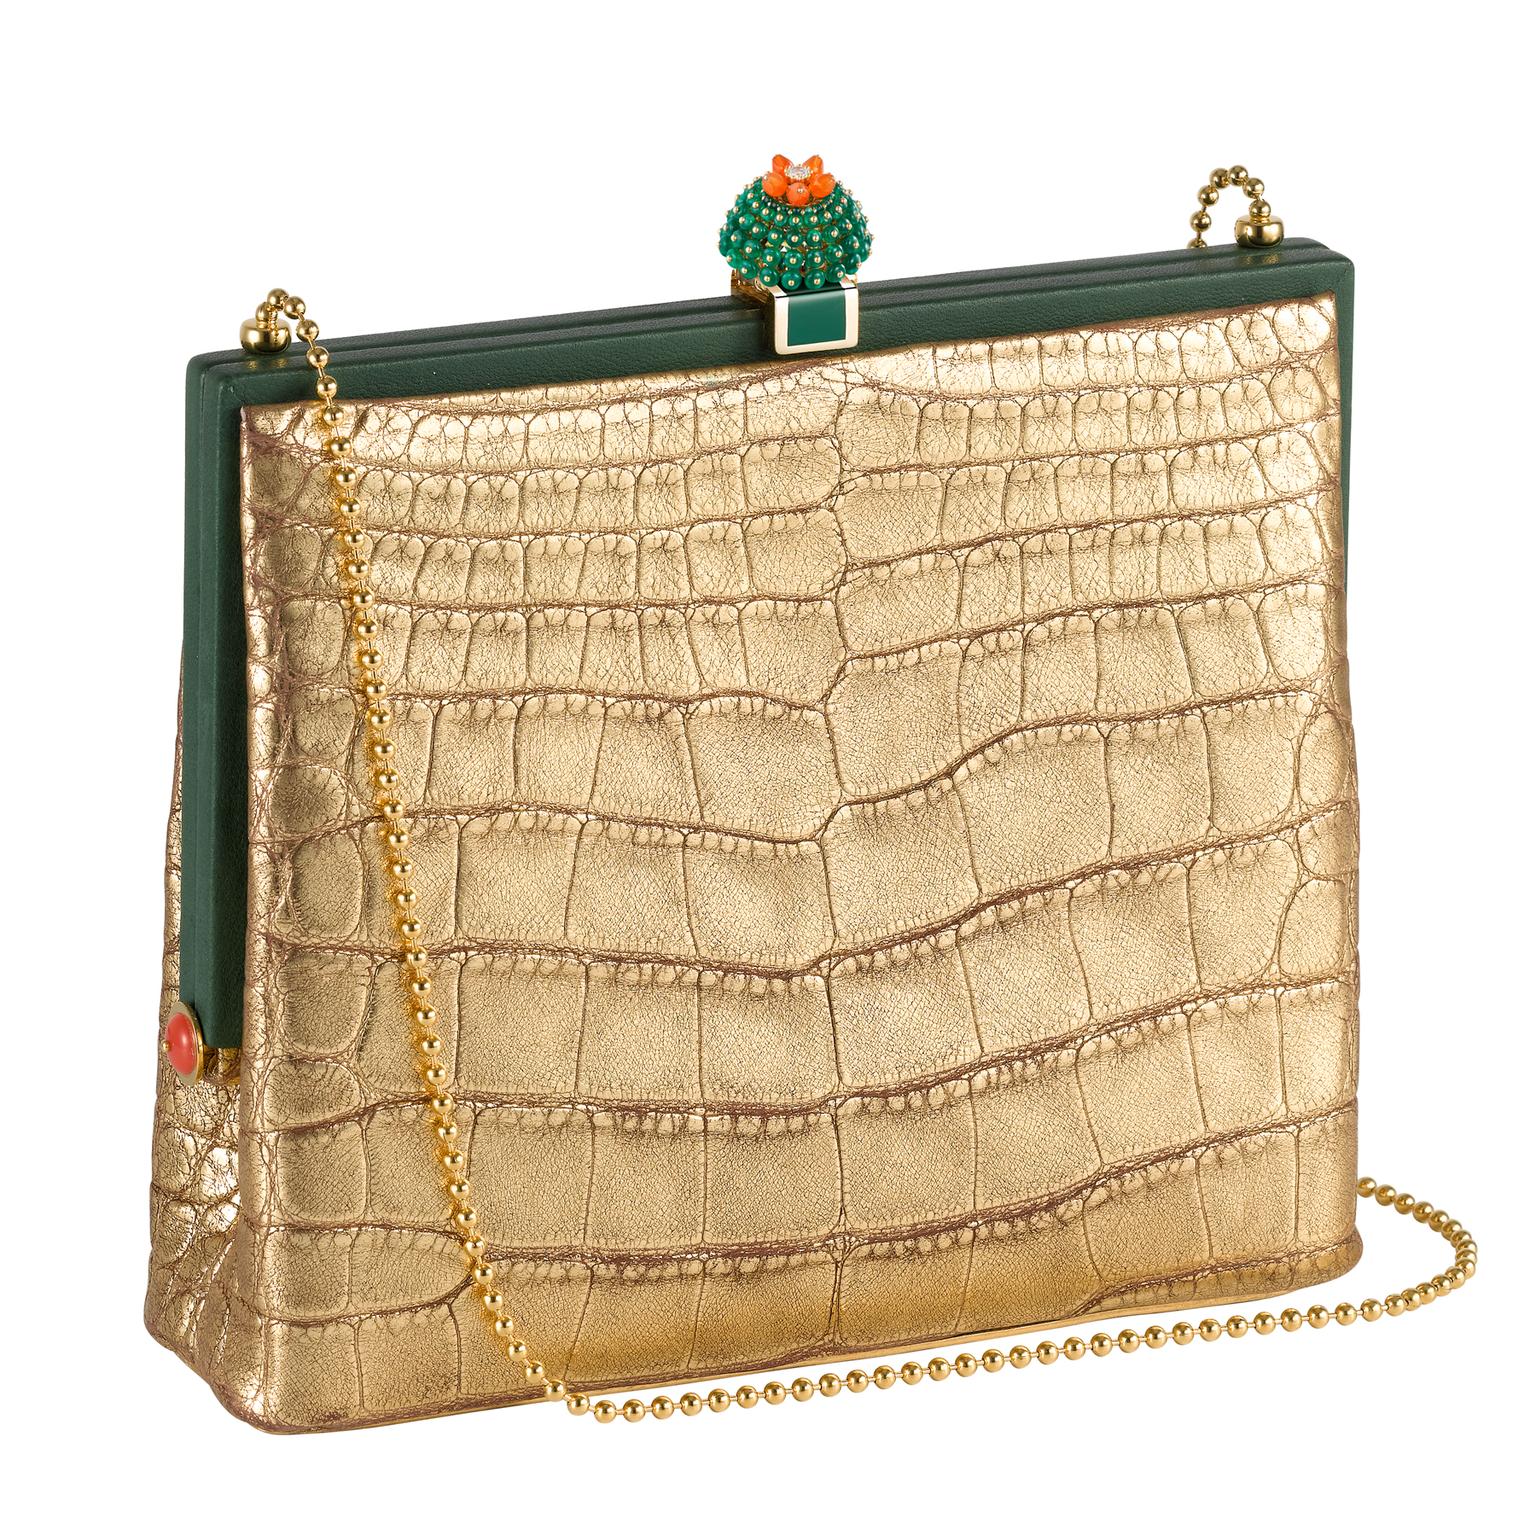 Gold Cactus de Cartier handbag